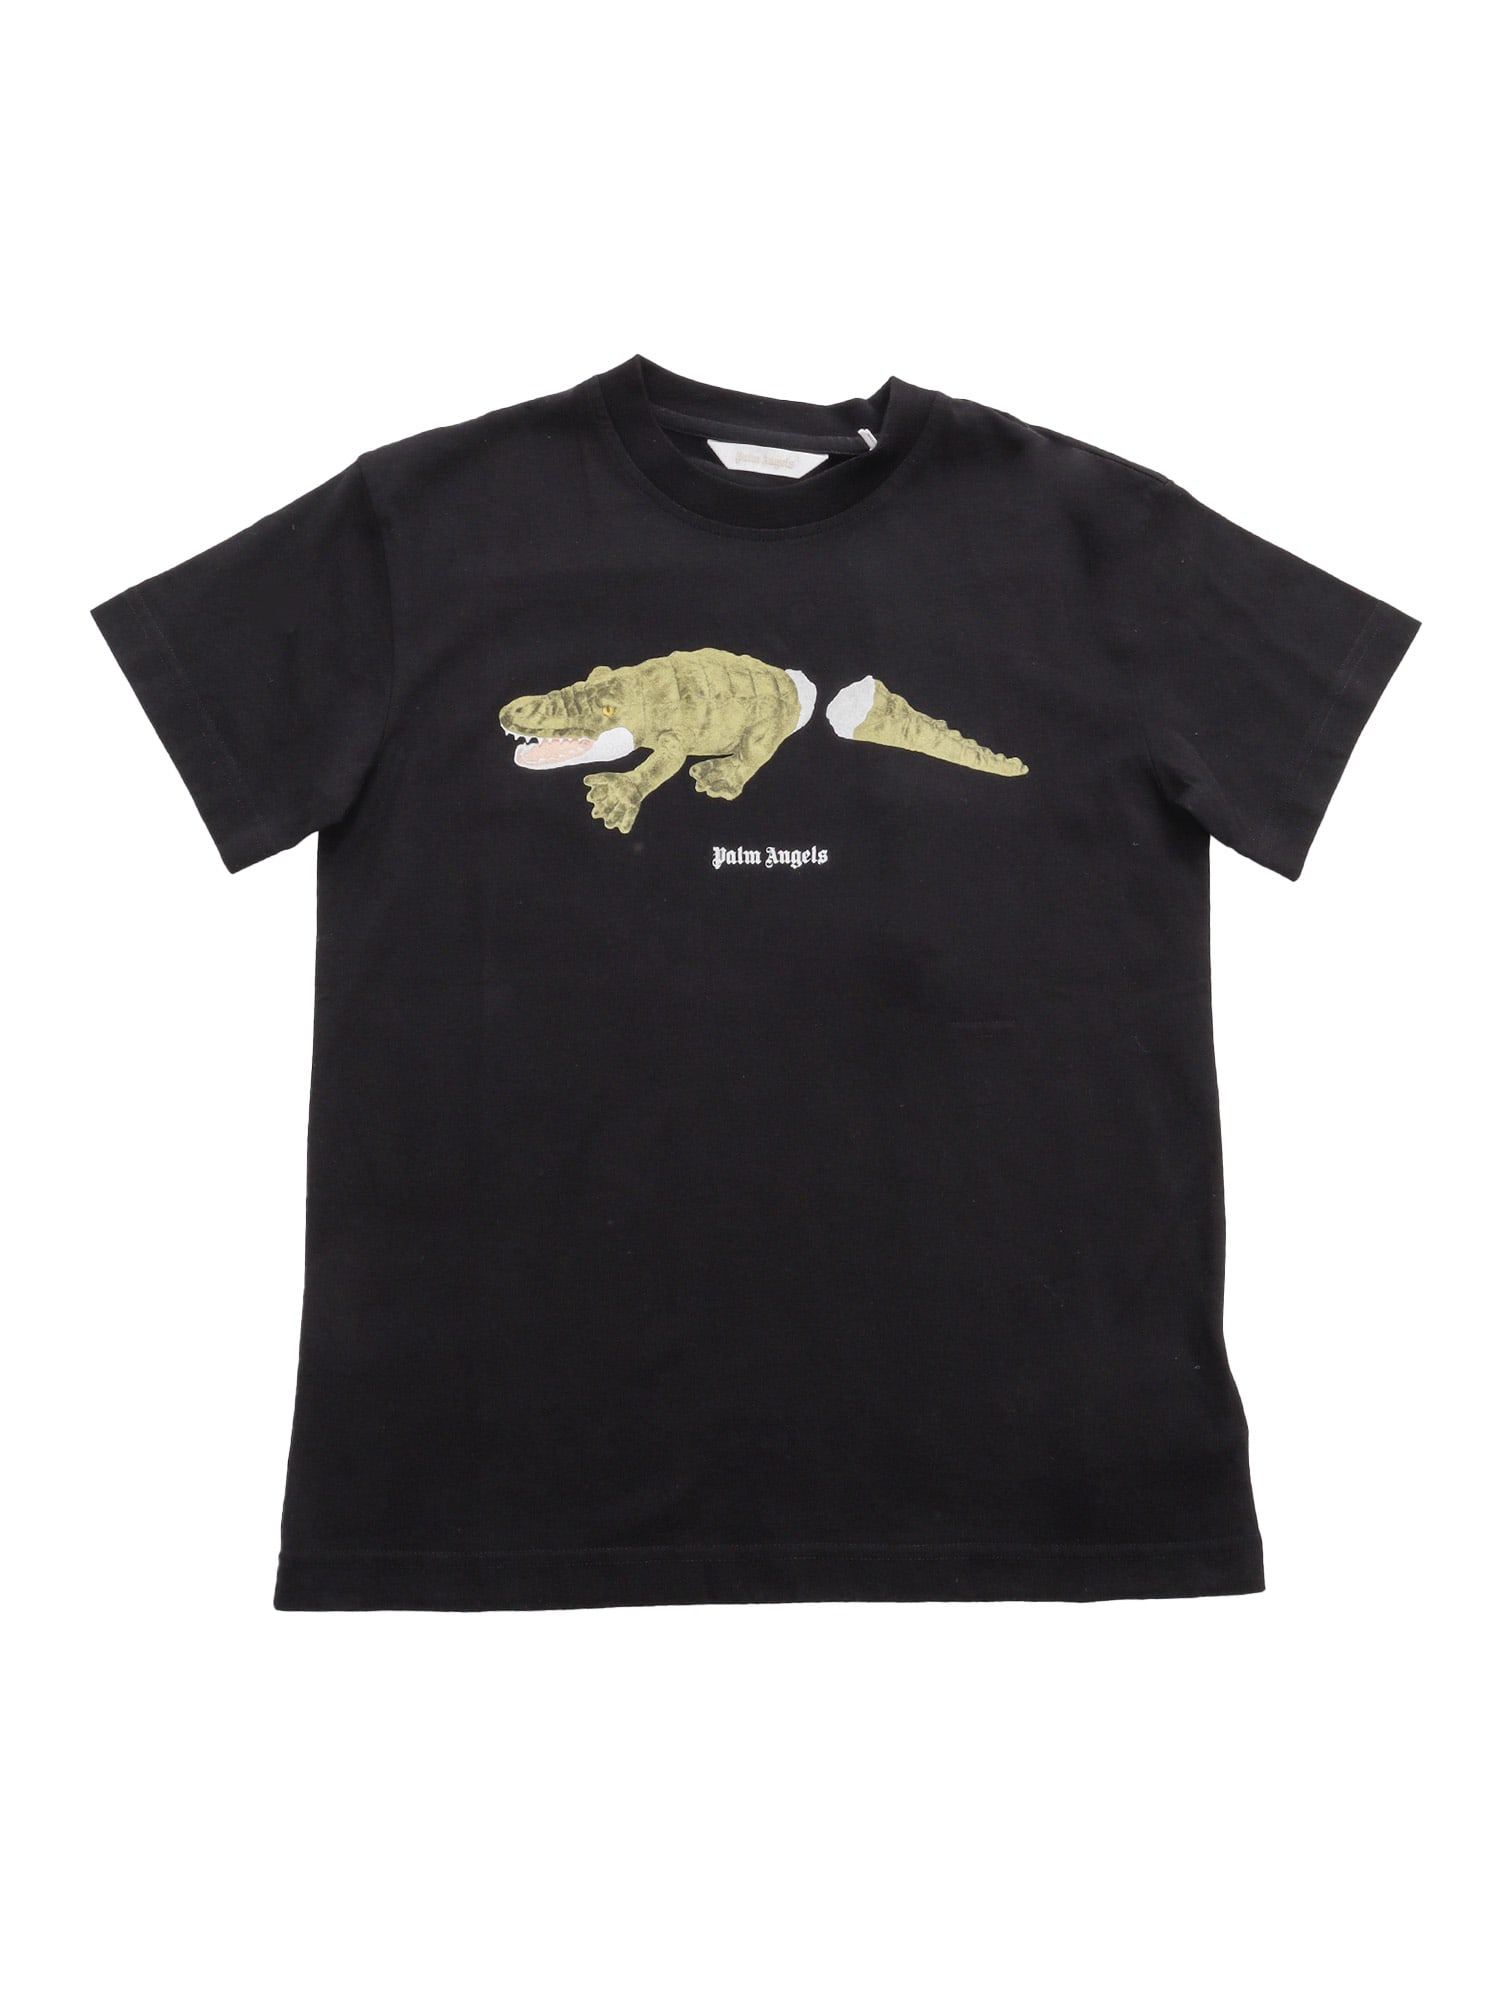 Palm Angels Crocodile T-shirt